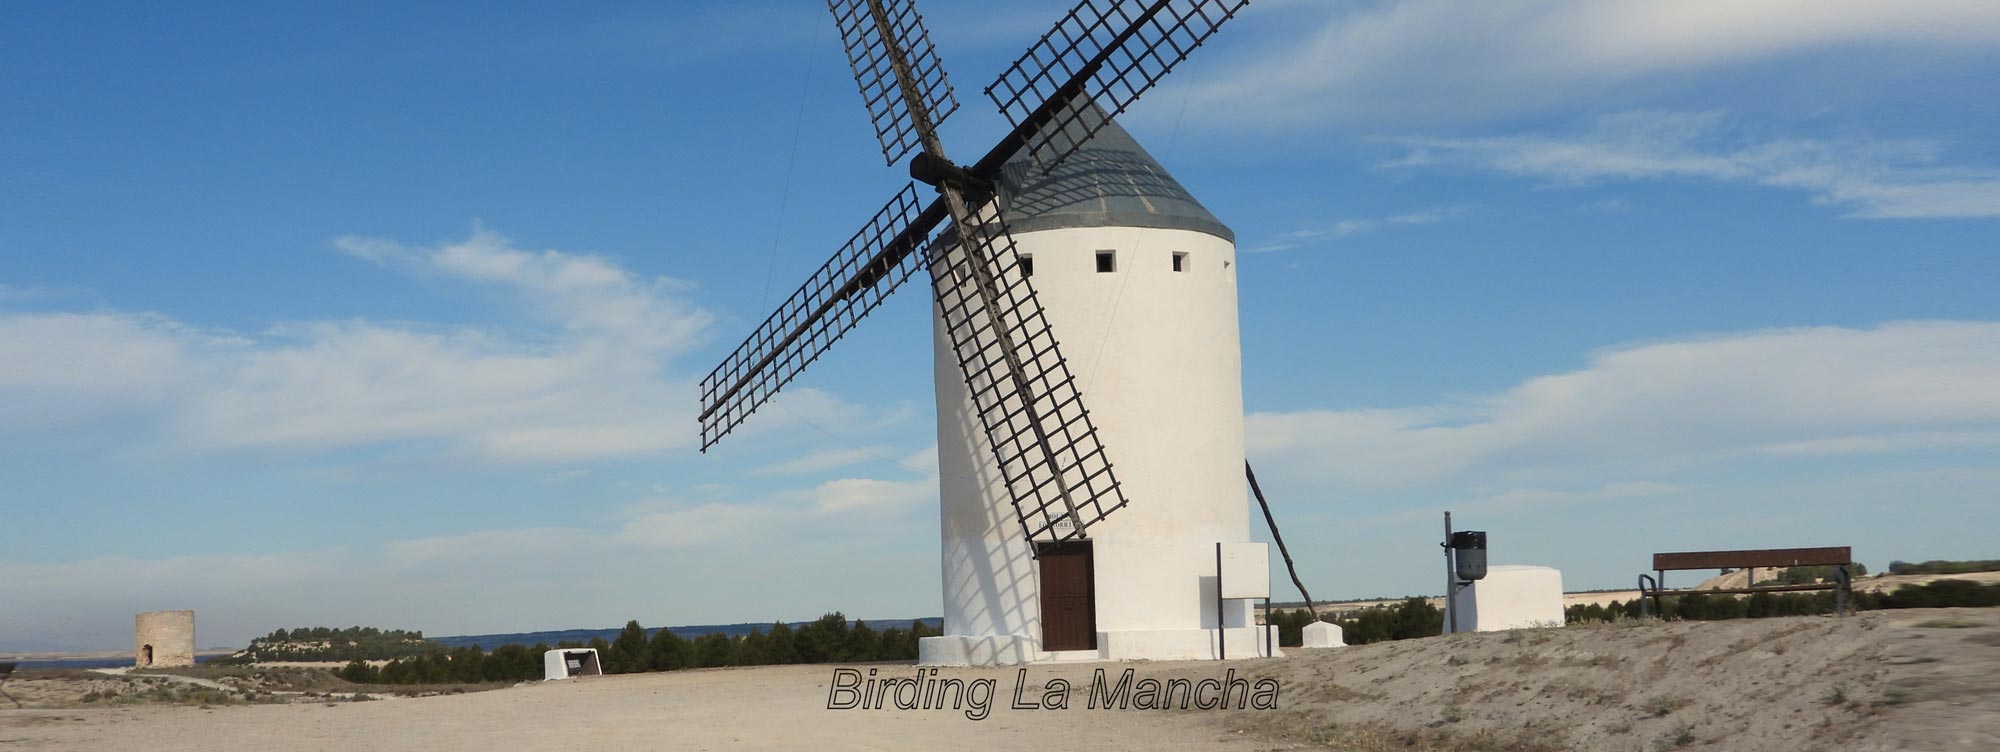 Turismo Cultural Birding La Mancha